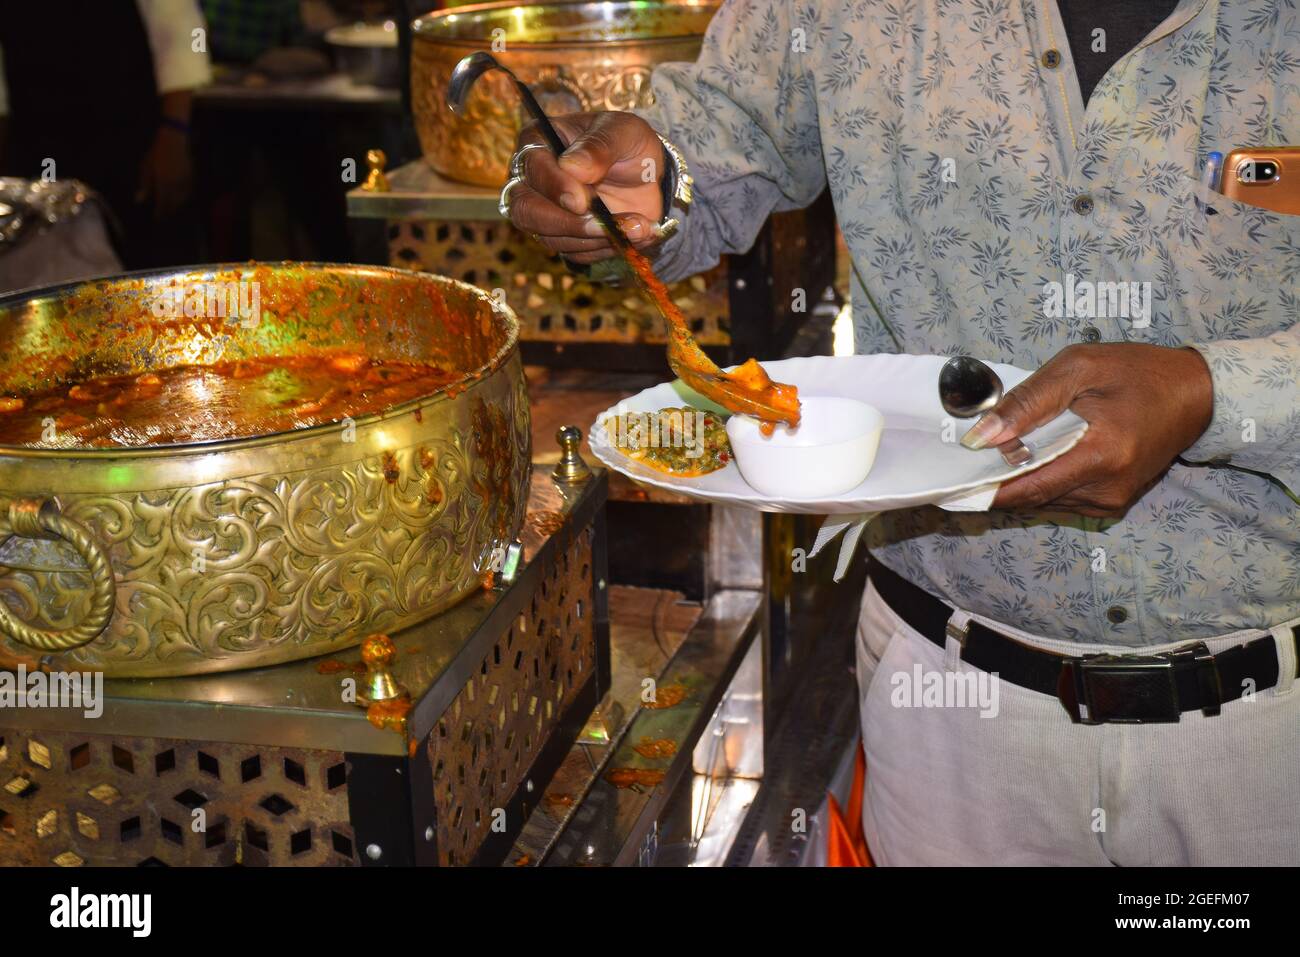 Indischer Mann, der Paneer Gemüse in seinem Teller aus einem hellen großen Topf bei der Hochzeitszeremonie trägt Stockfoto